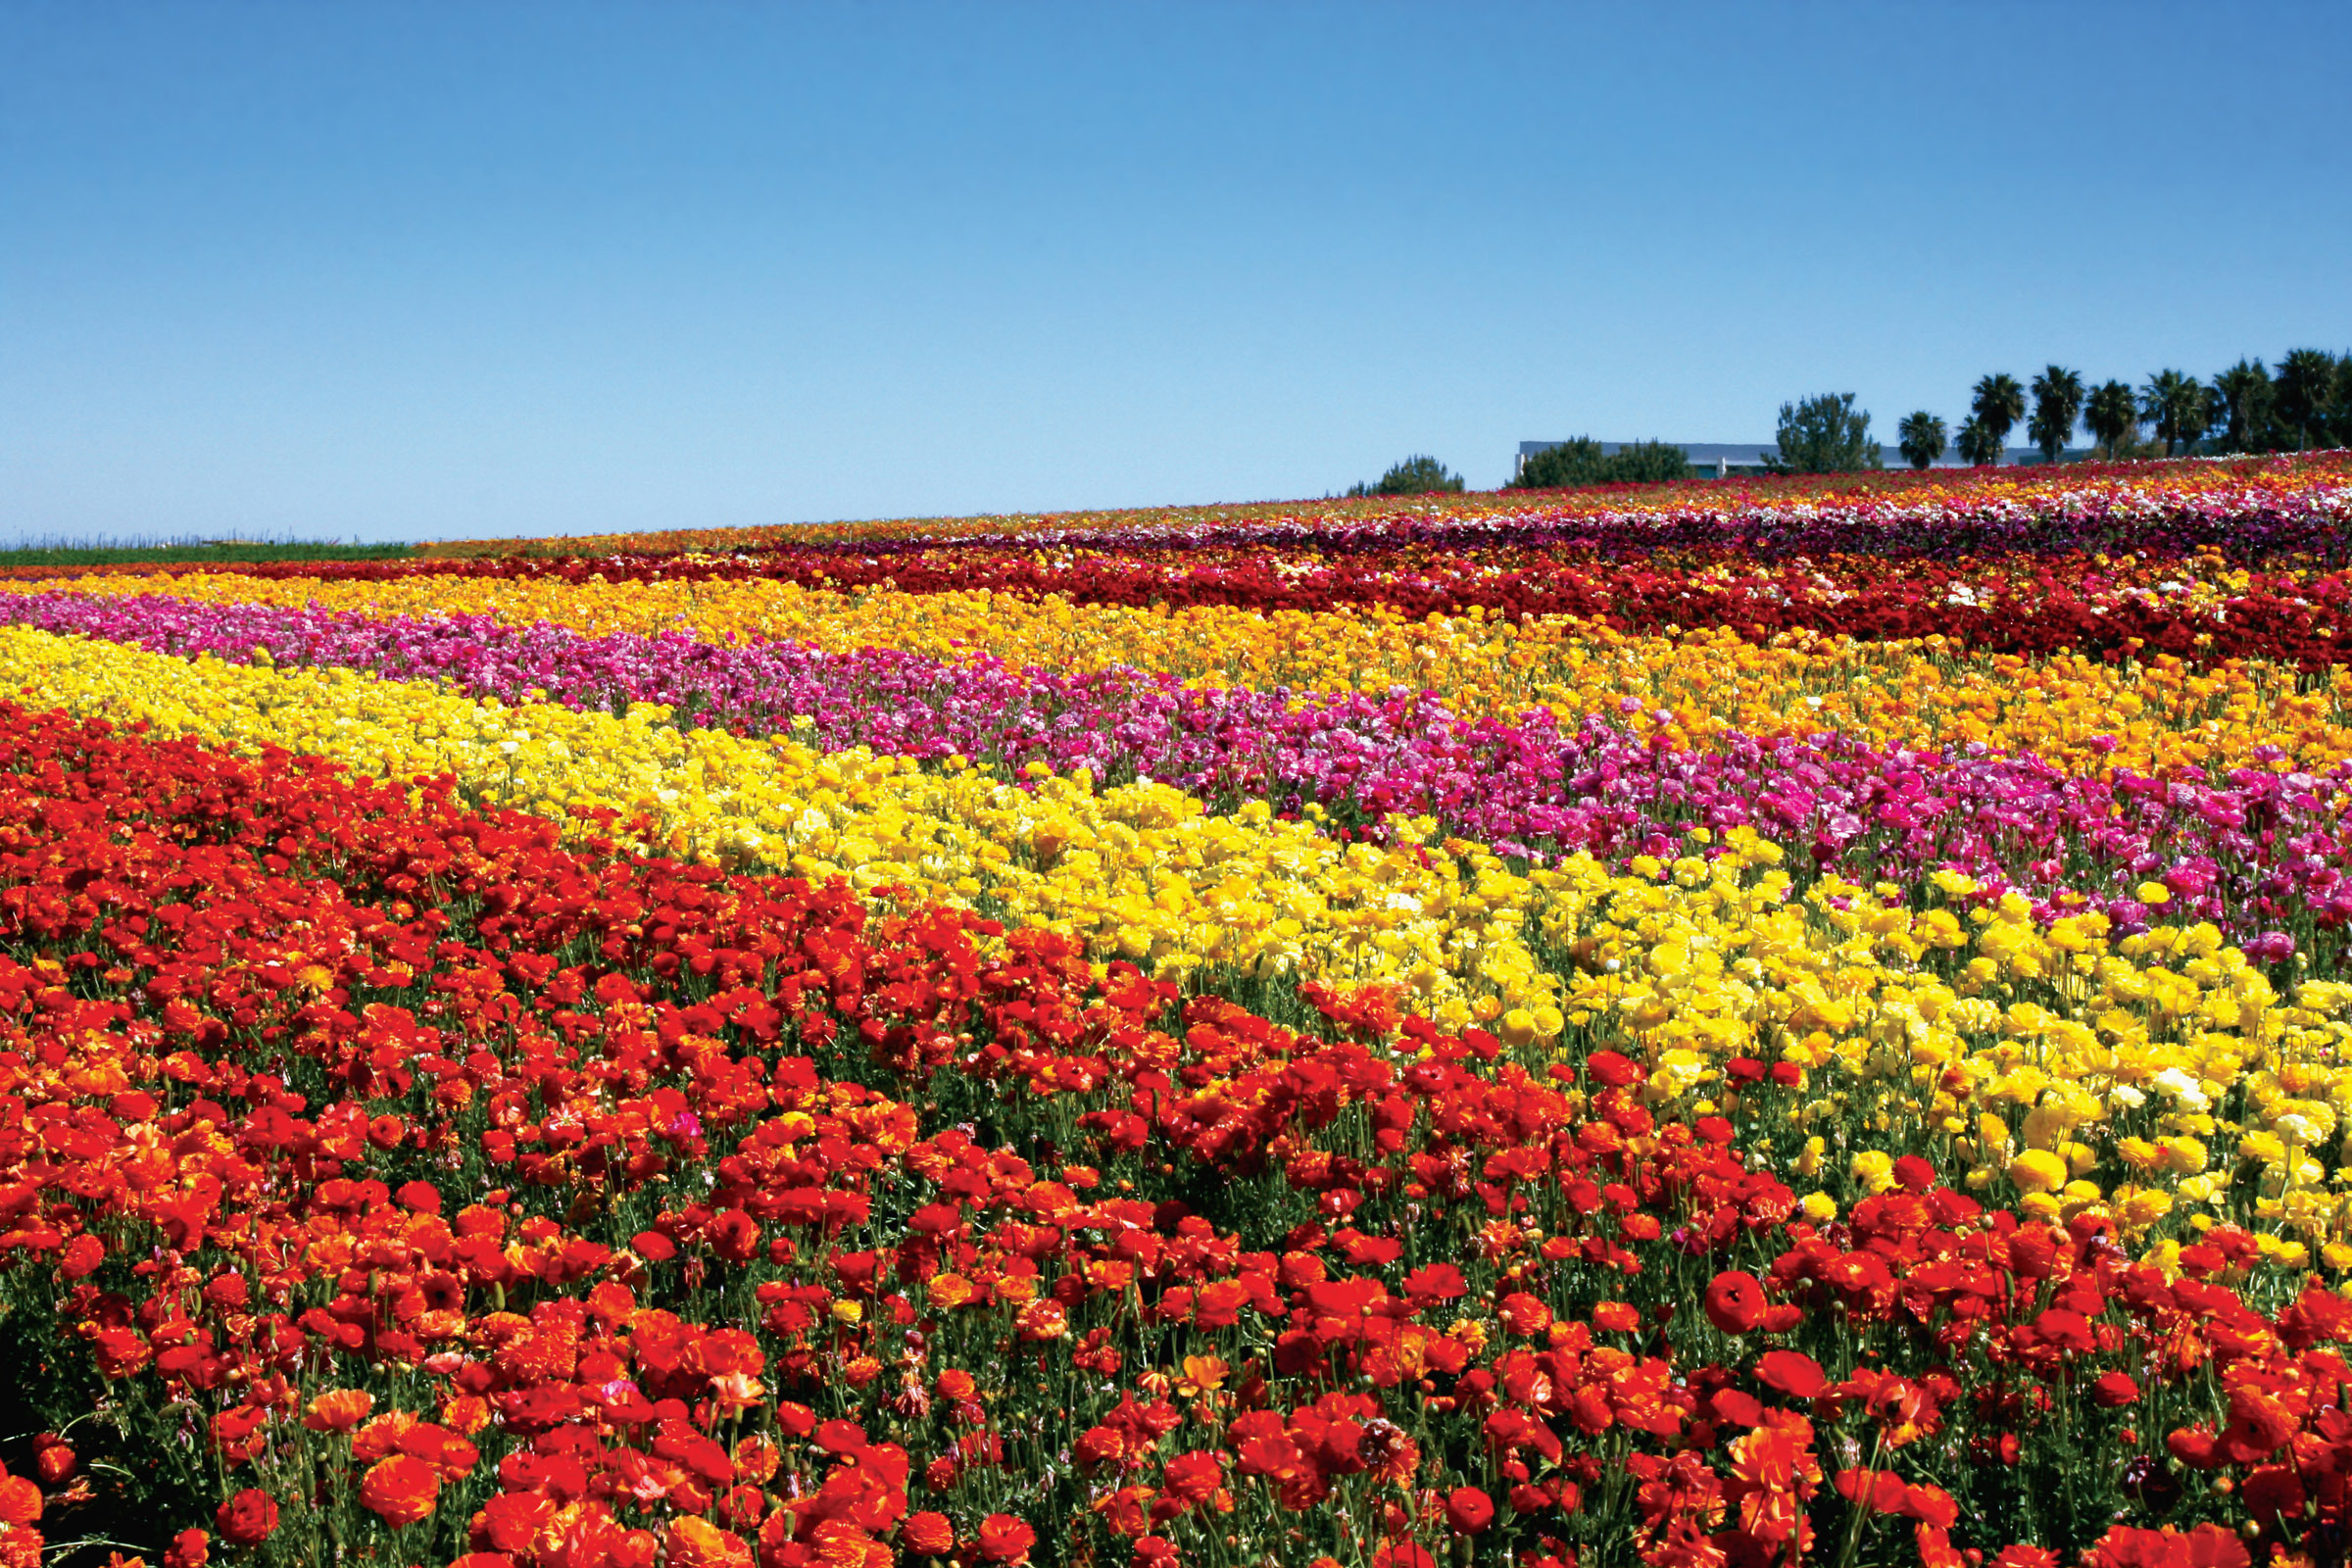 The Flower Fields - Wikipedia